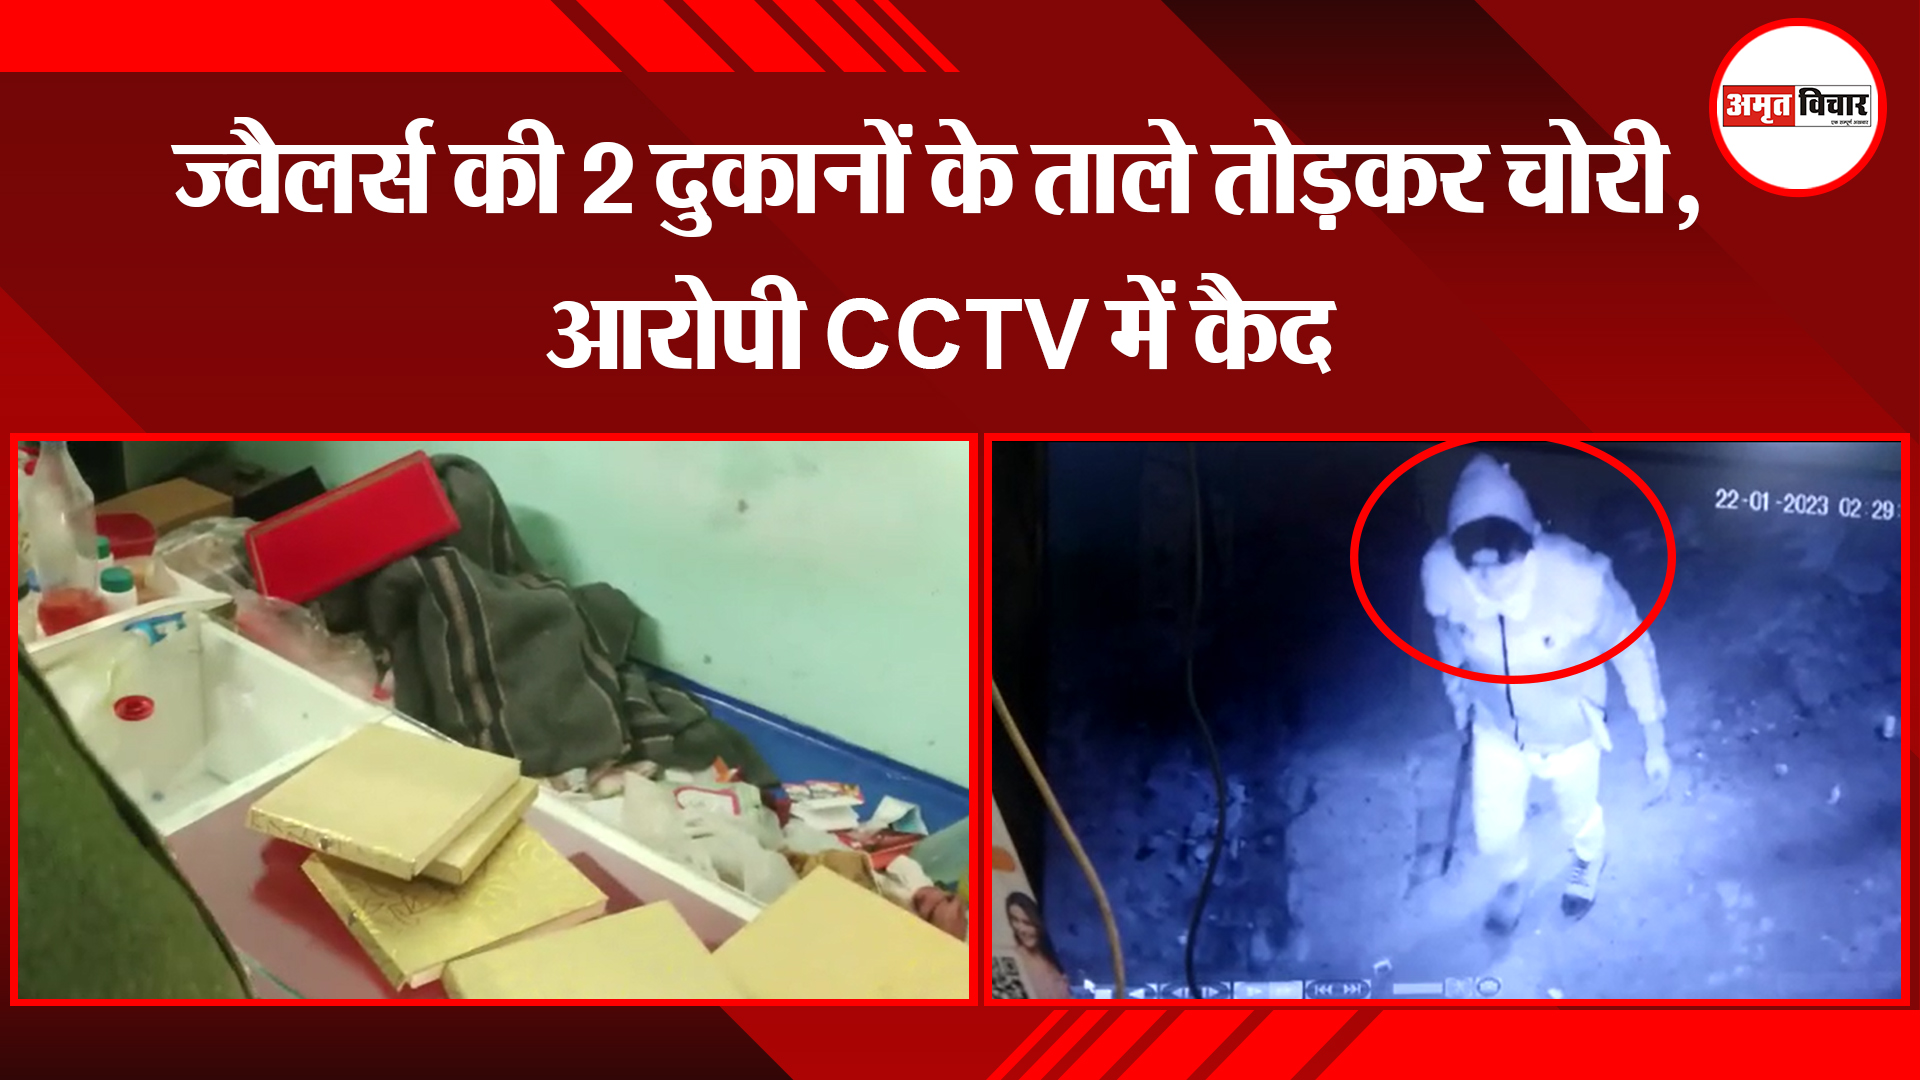 काशीपुर: ज्वैलर्स की 2 दुकानों के ताले तोड़कर चोरी, आरोपी CCTV में कैद